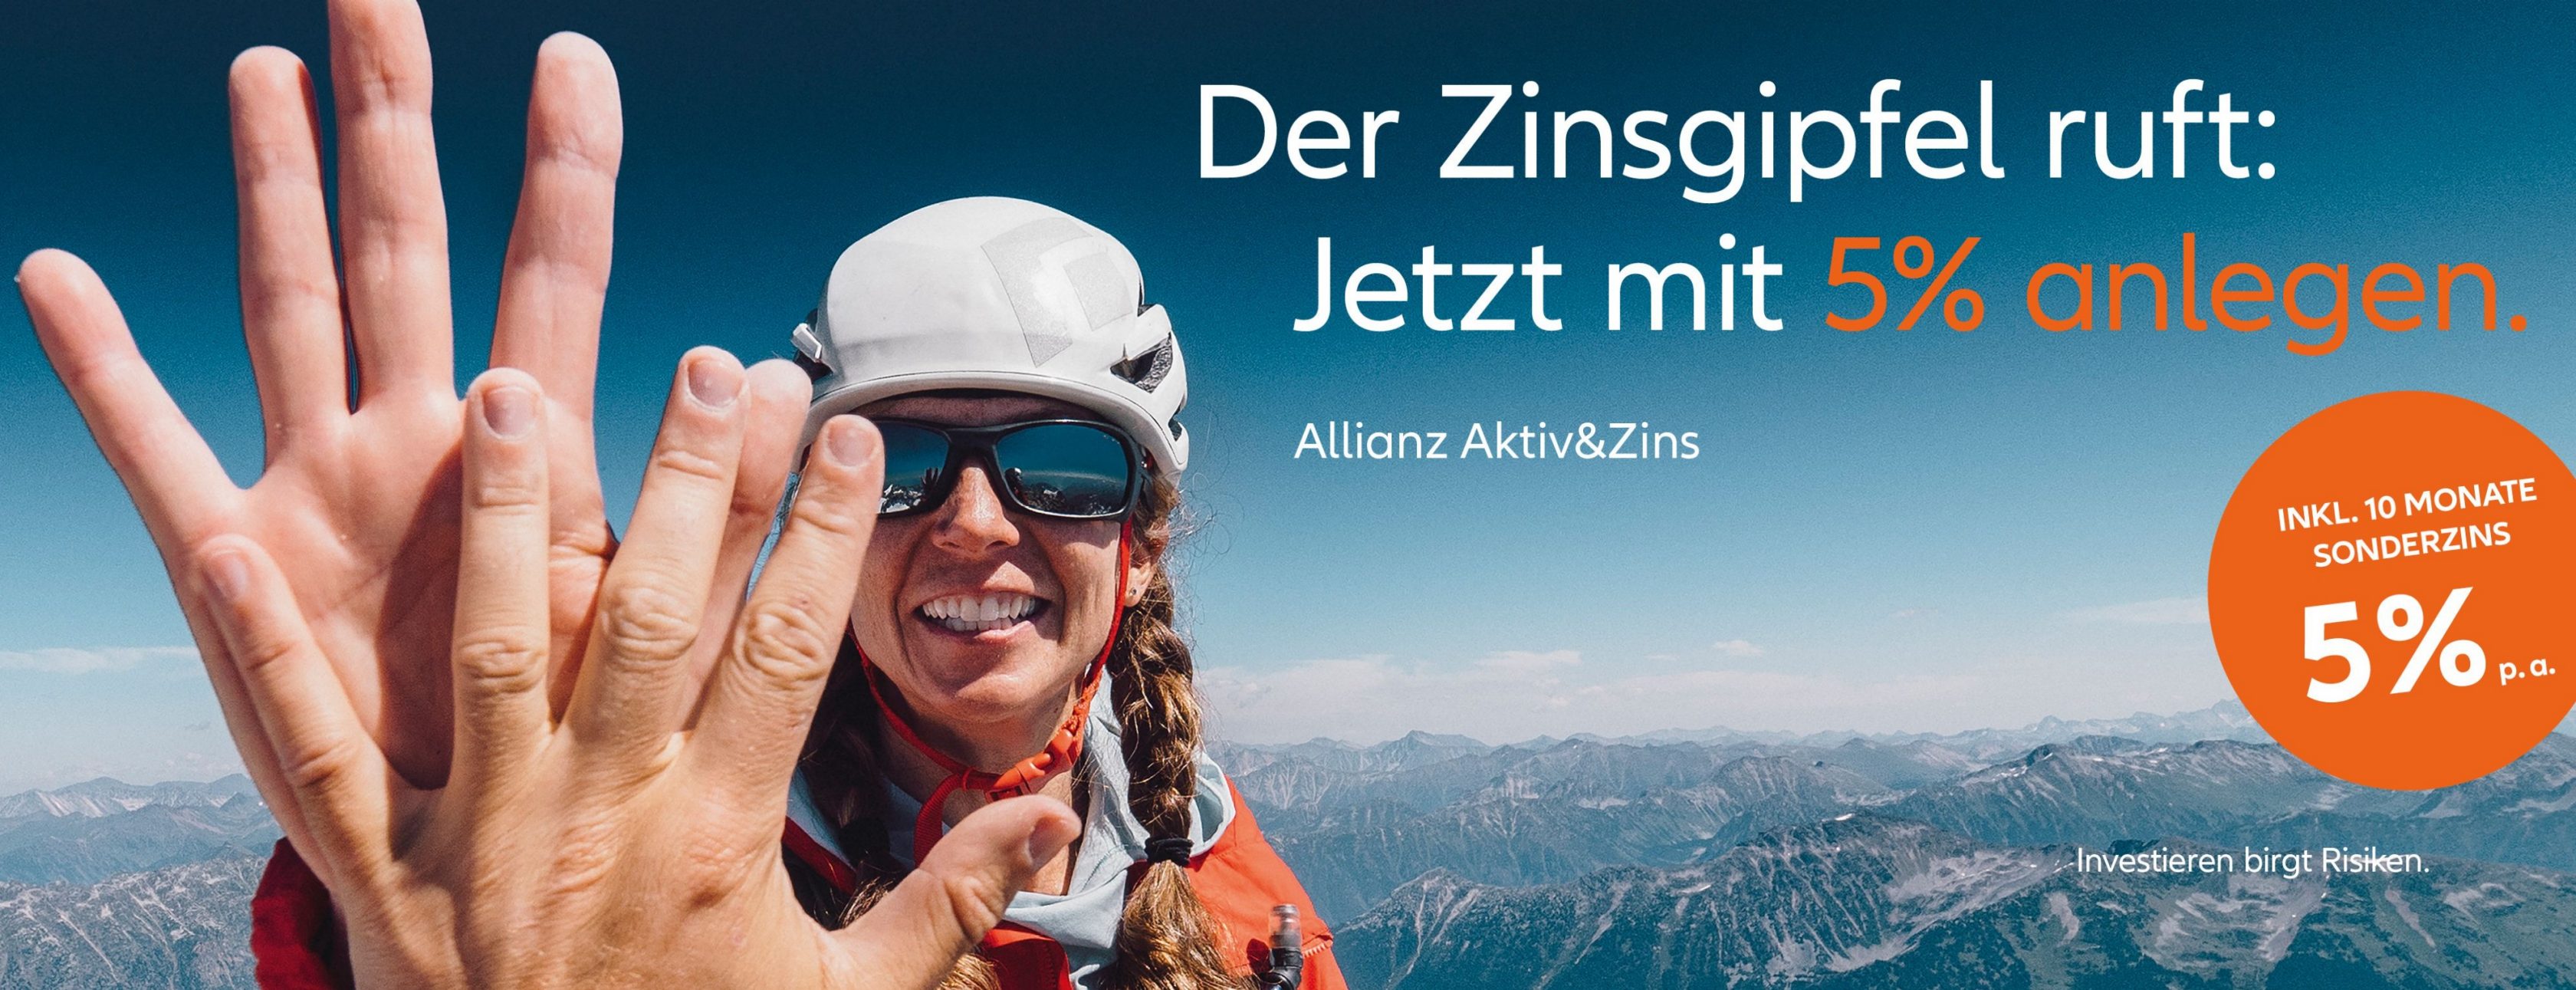 Allianz Versicherung Stefan Richter Hof - Stefan Richter, Hof, Zinsgipfel ruft, Bayern 